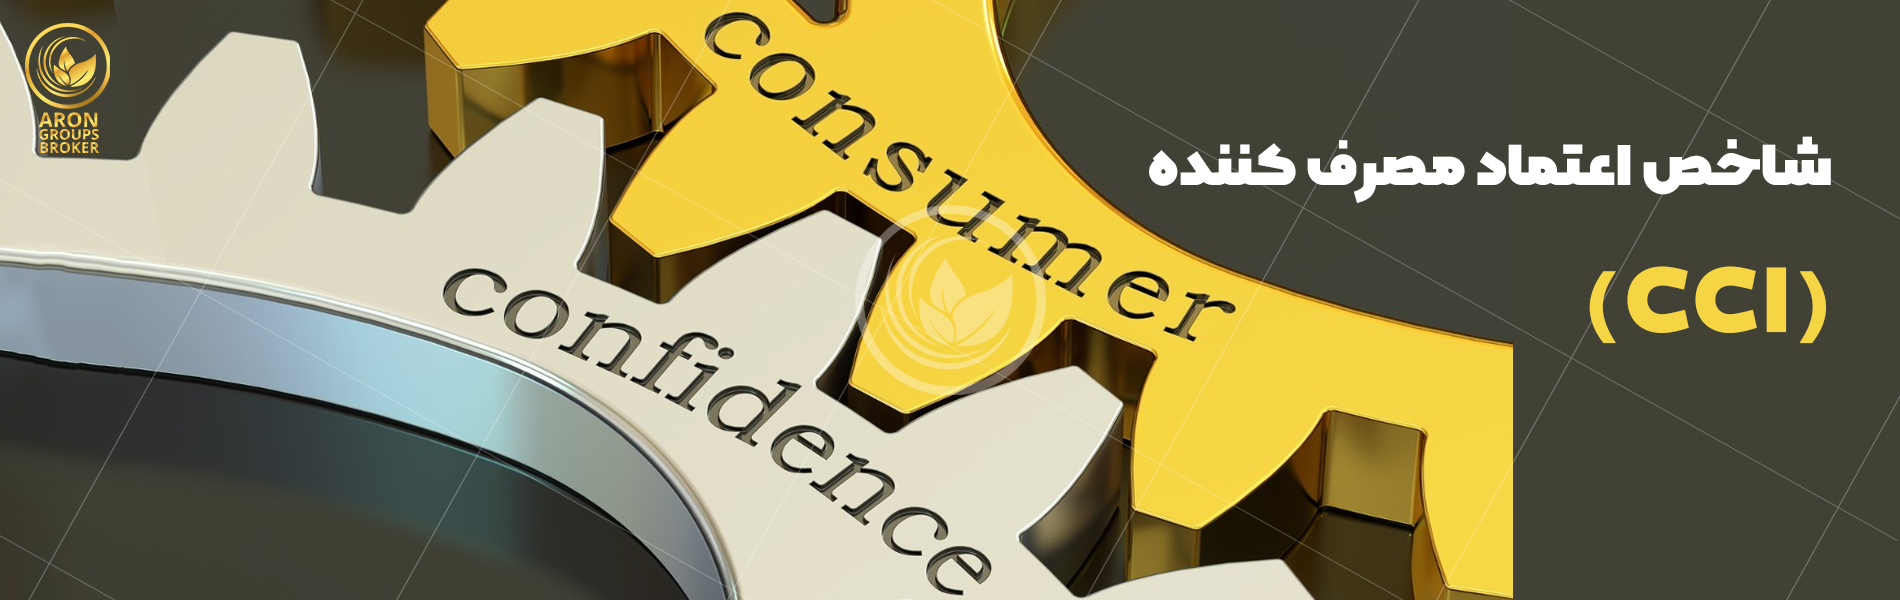 شاخص اعتماد مصرف کننده CCI چیست؟